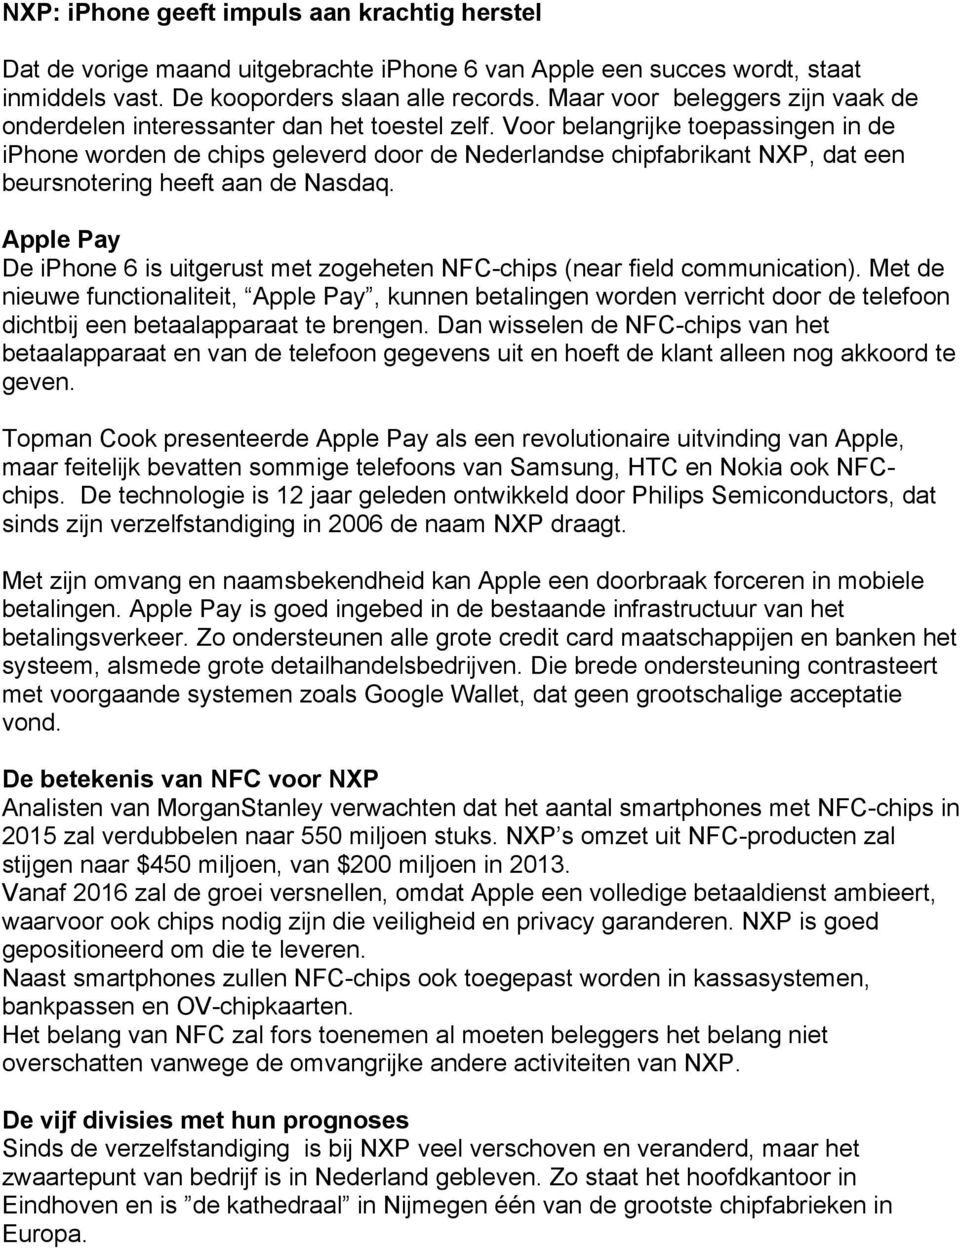 Vr belangrijke tepassingen in de iphne wrden de chips geleverd dr de Nederlandse chipfabrikant NXP, dat een beursntering heeft aan de Nasdaq.